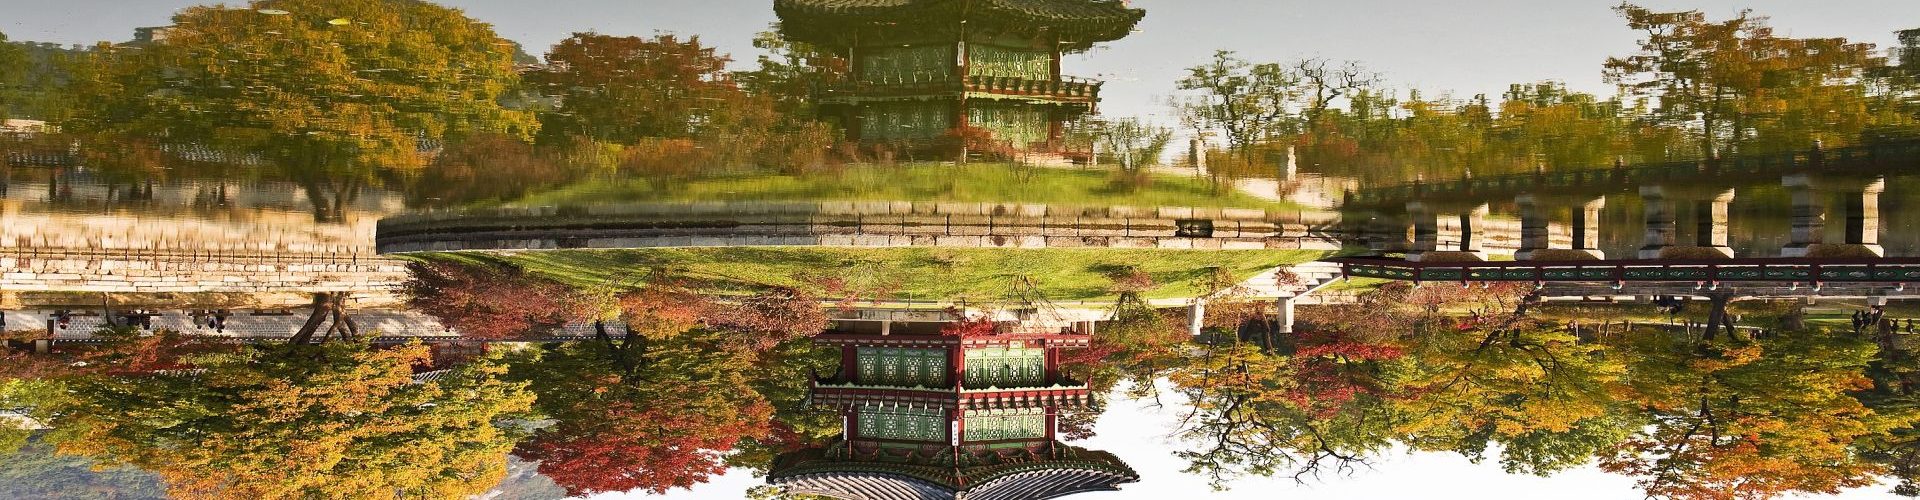 גן בעיר האסורה, סין